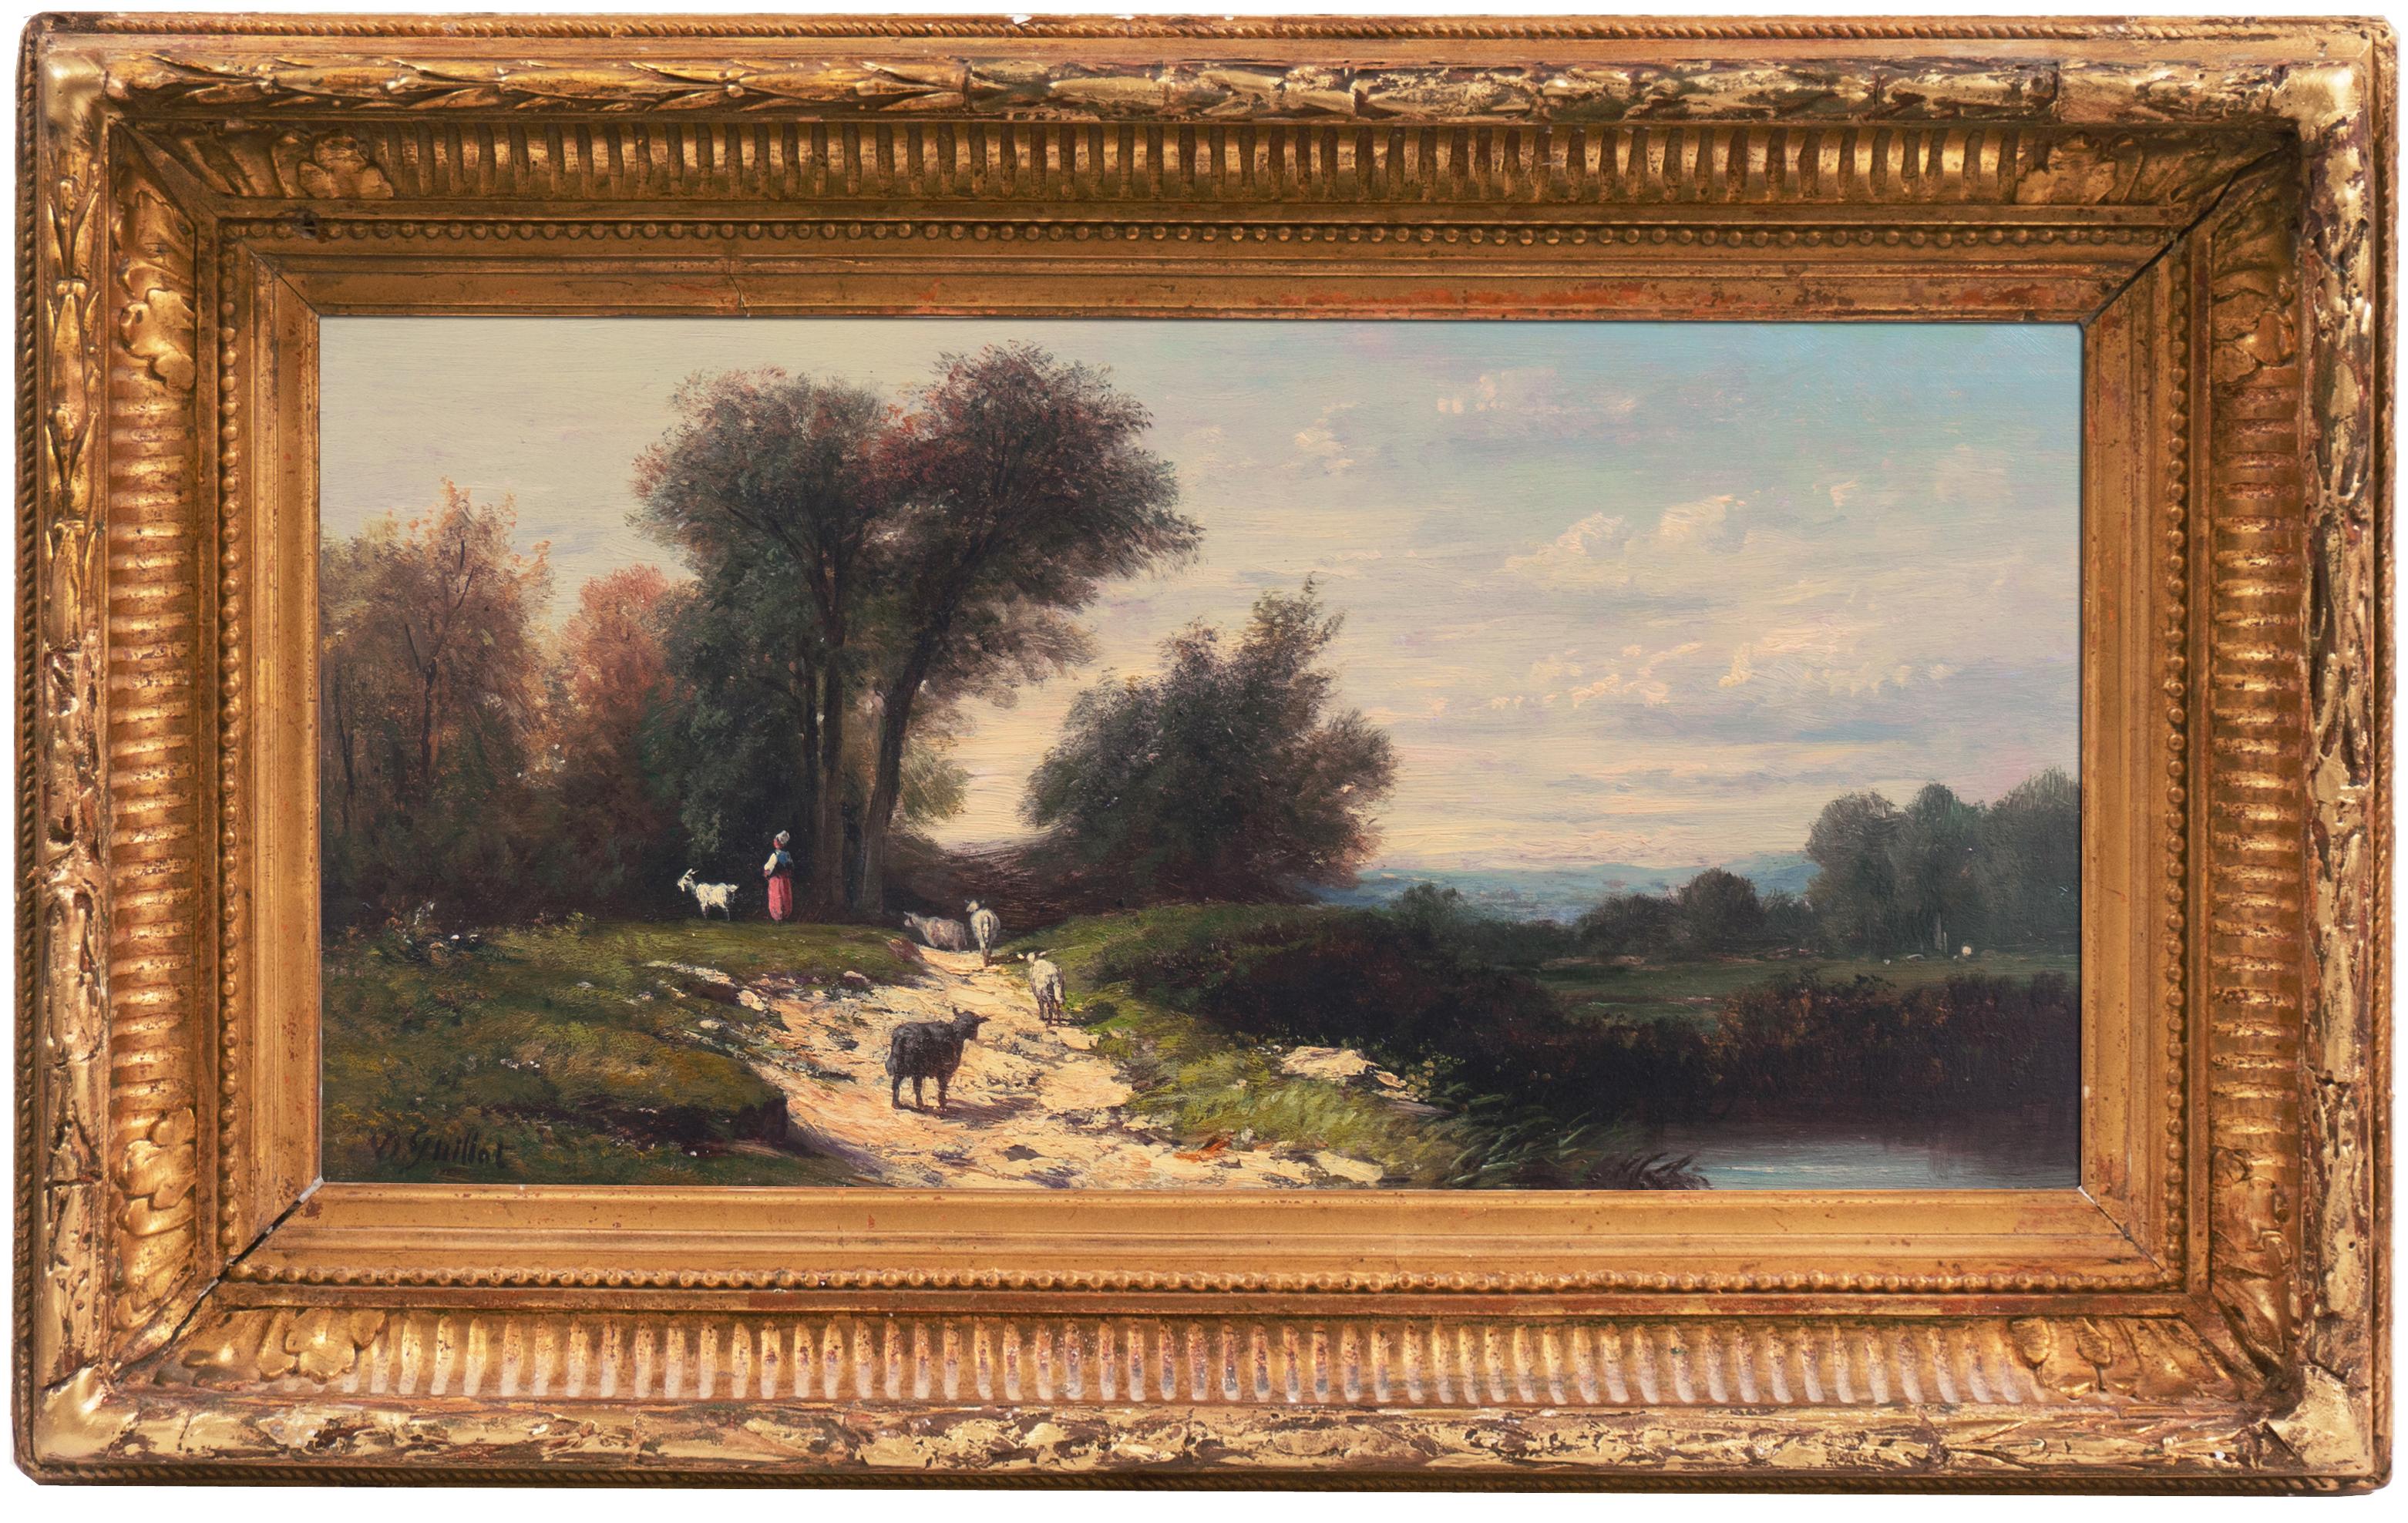 Donat Guillot Landscape Painting - 'Shepherdess in a River Landscape' Salon des Artistes Françaises, Pushkin Museum